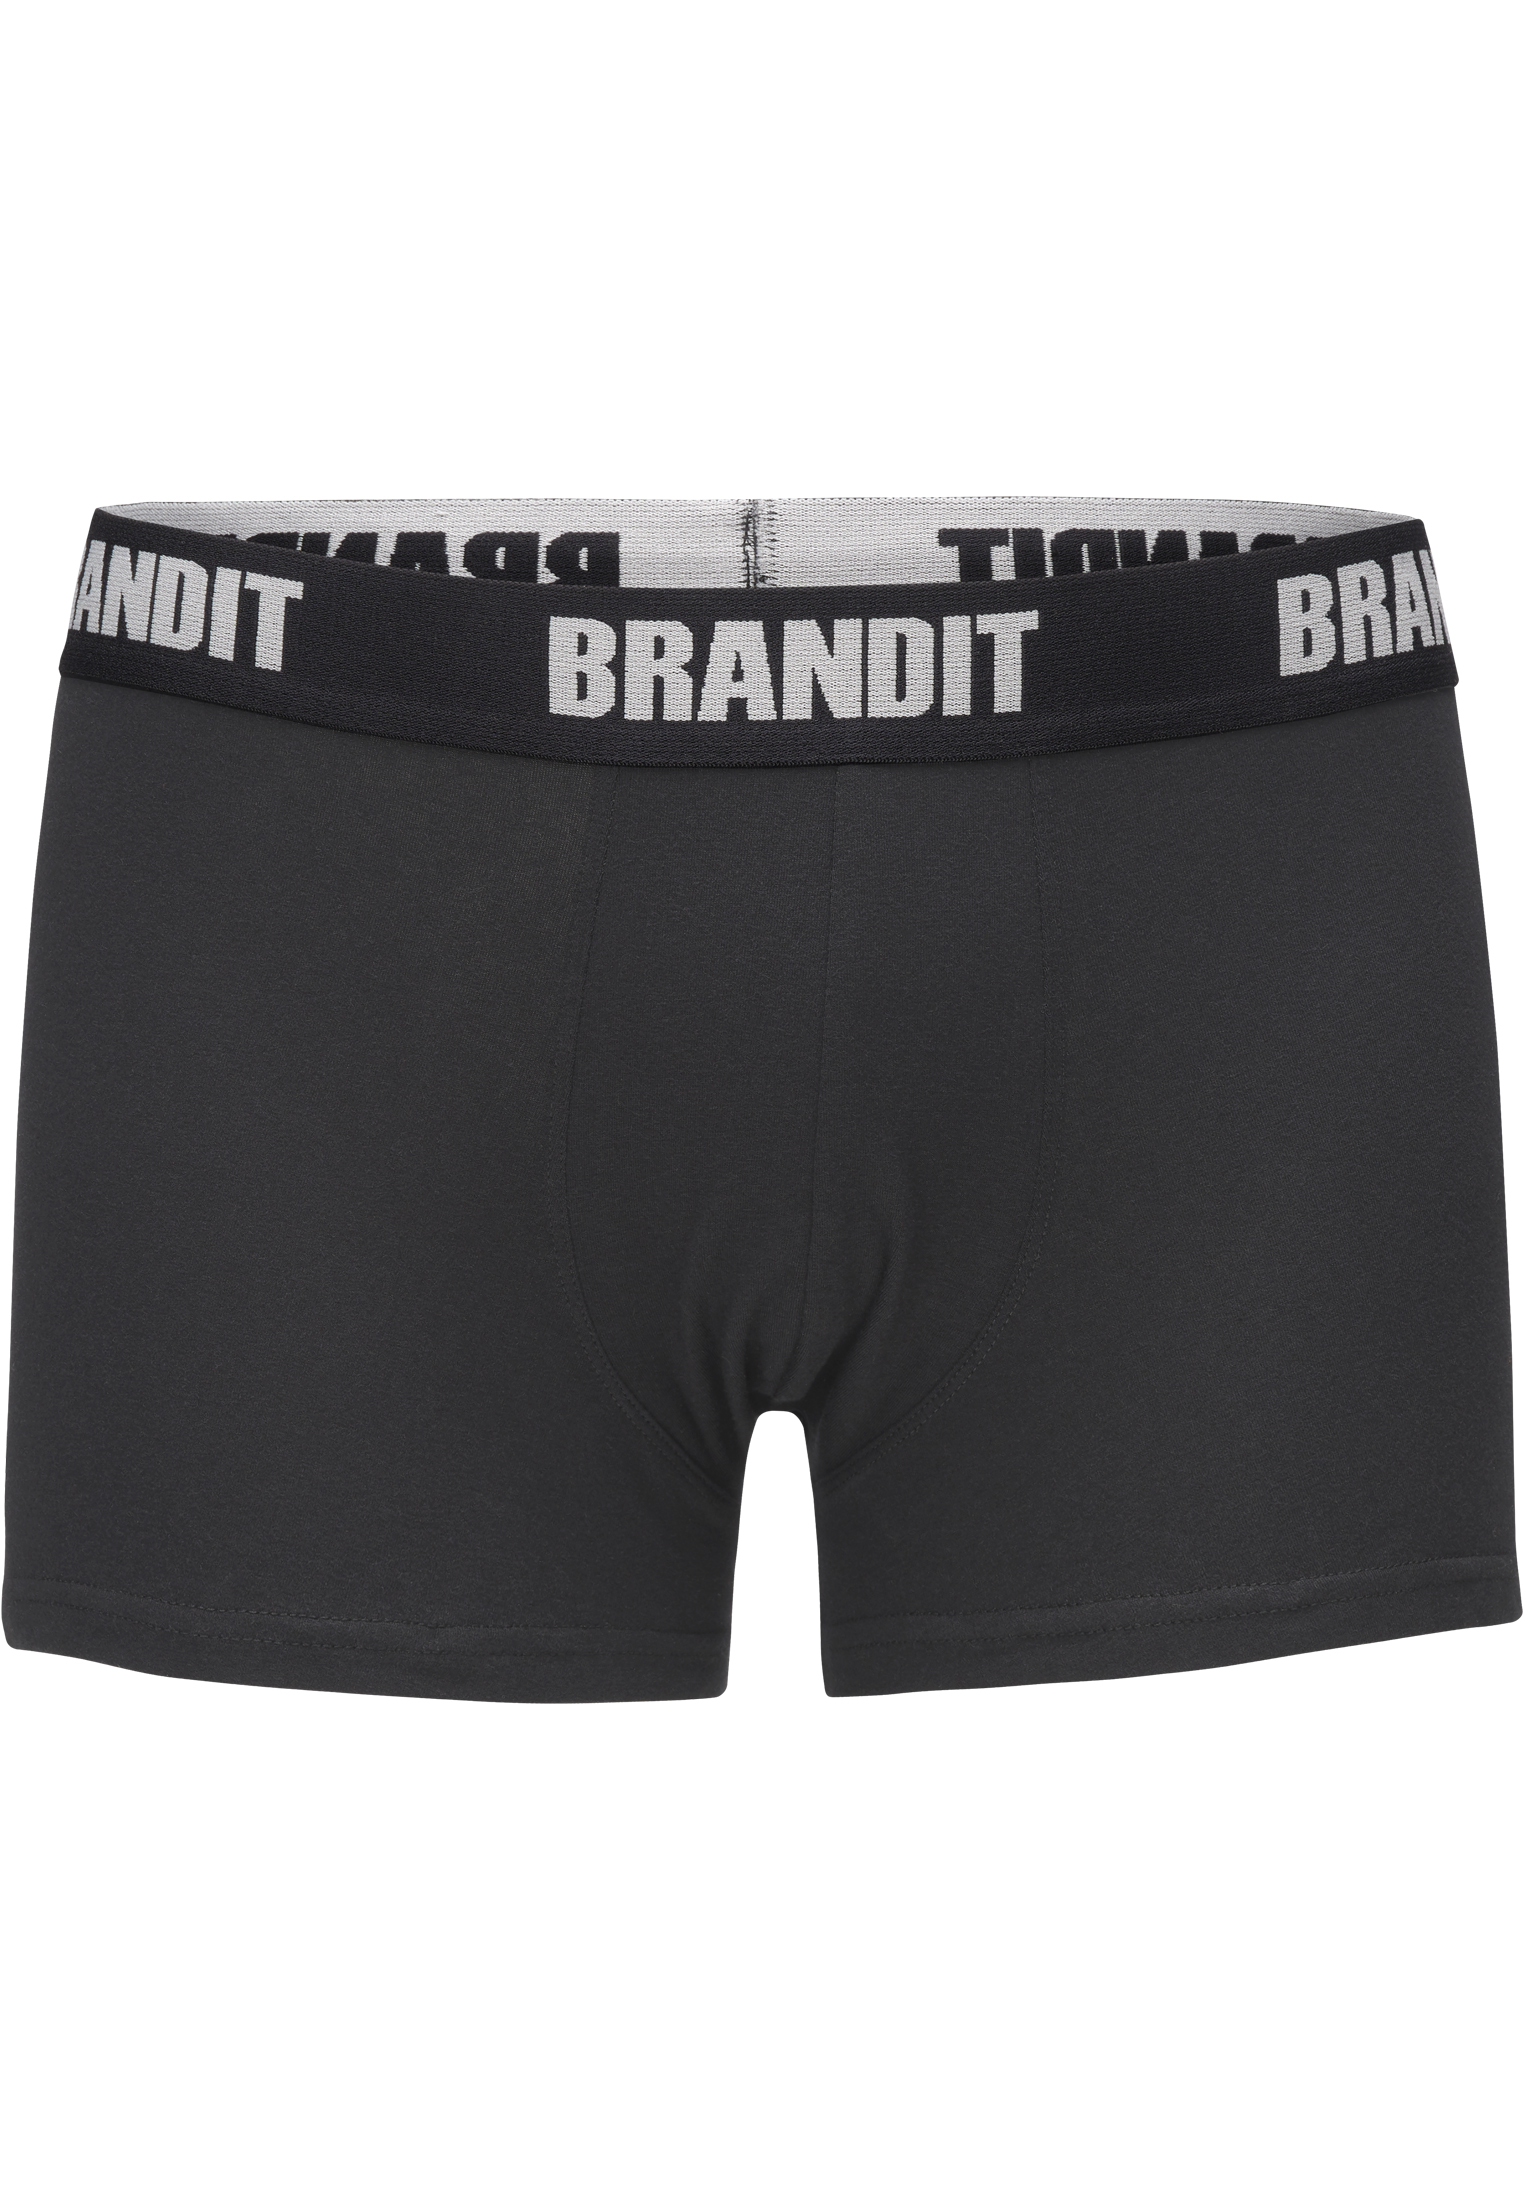 Underwear Boxershorts Logo 2er Pack in Farbe darkcamo/blk